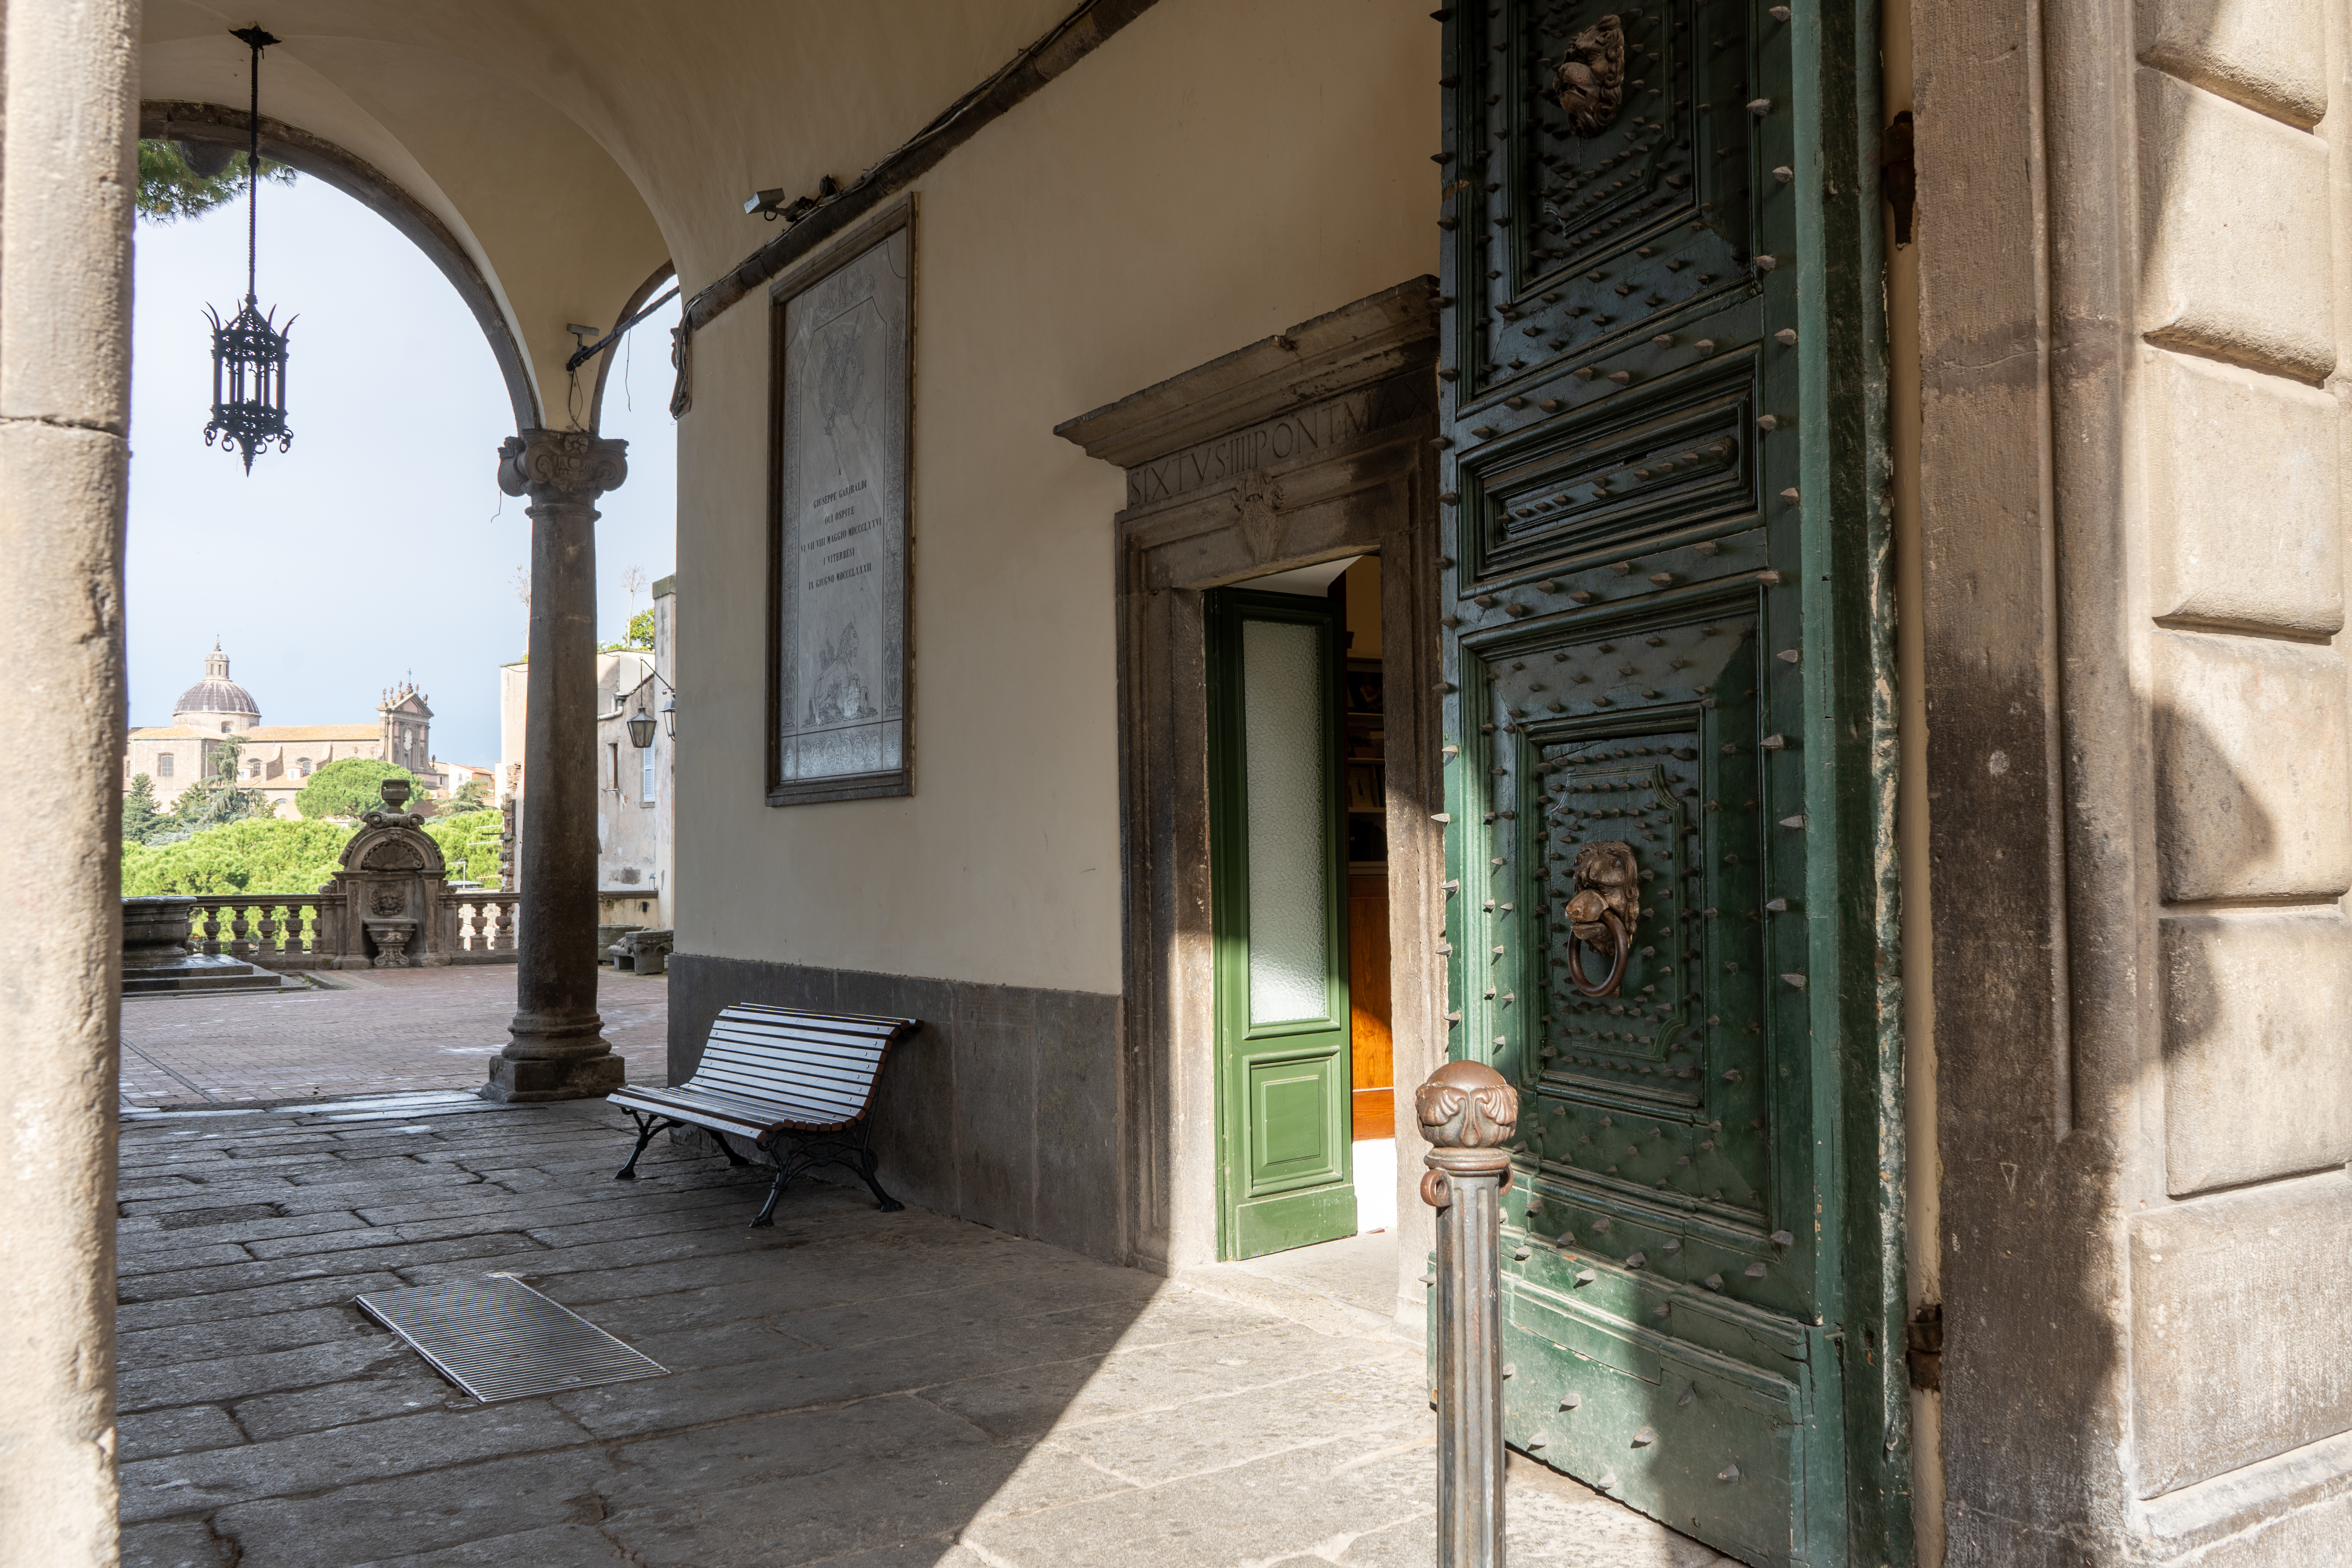 Foto dell'ingresso al museo dei portici